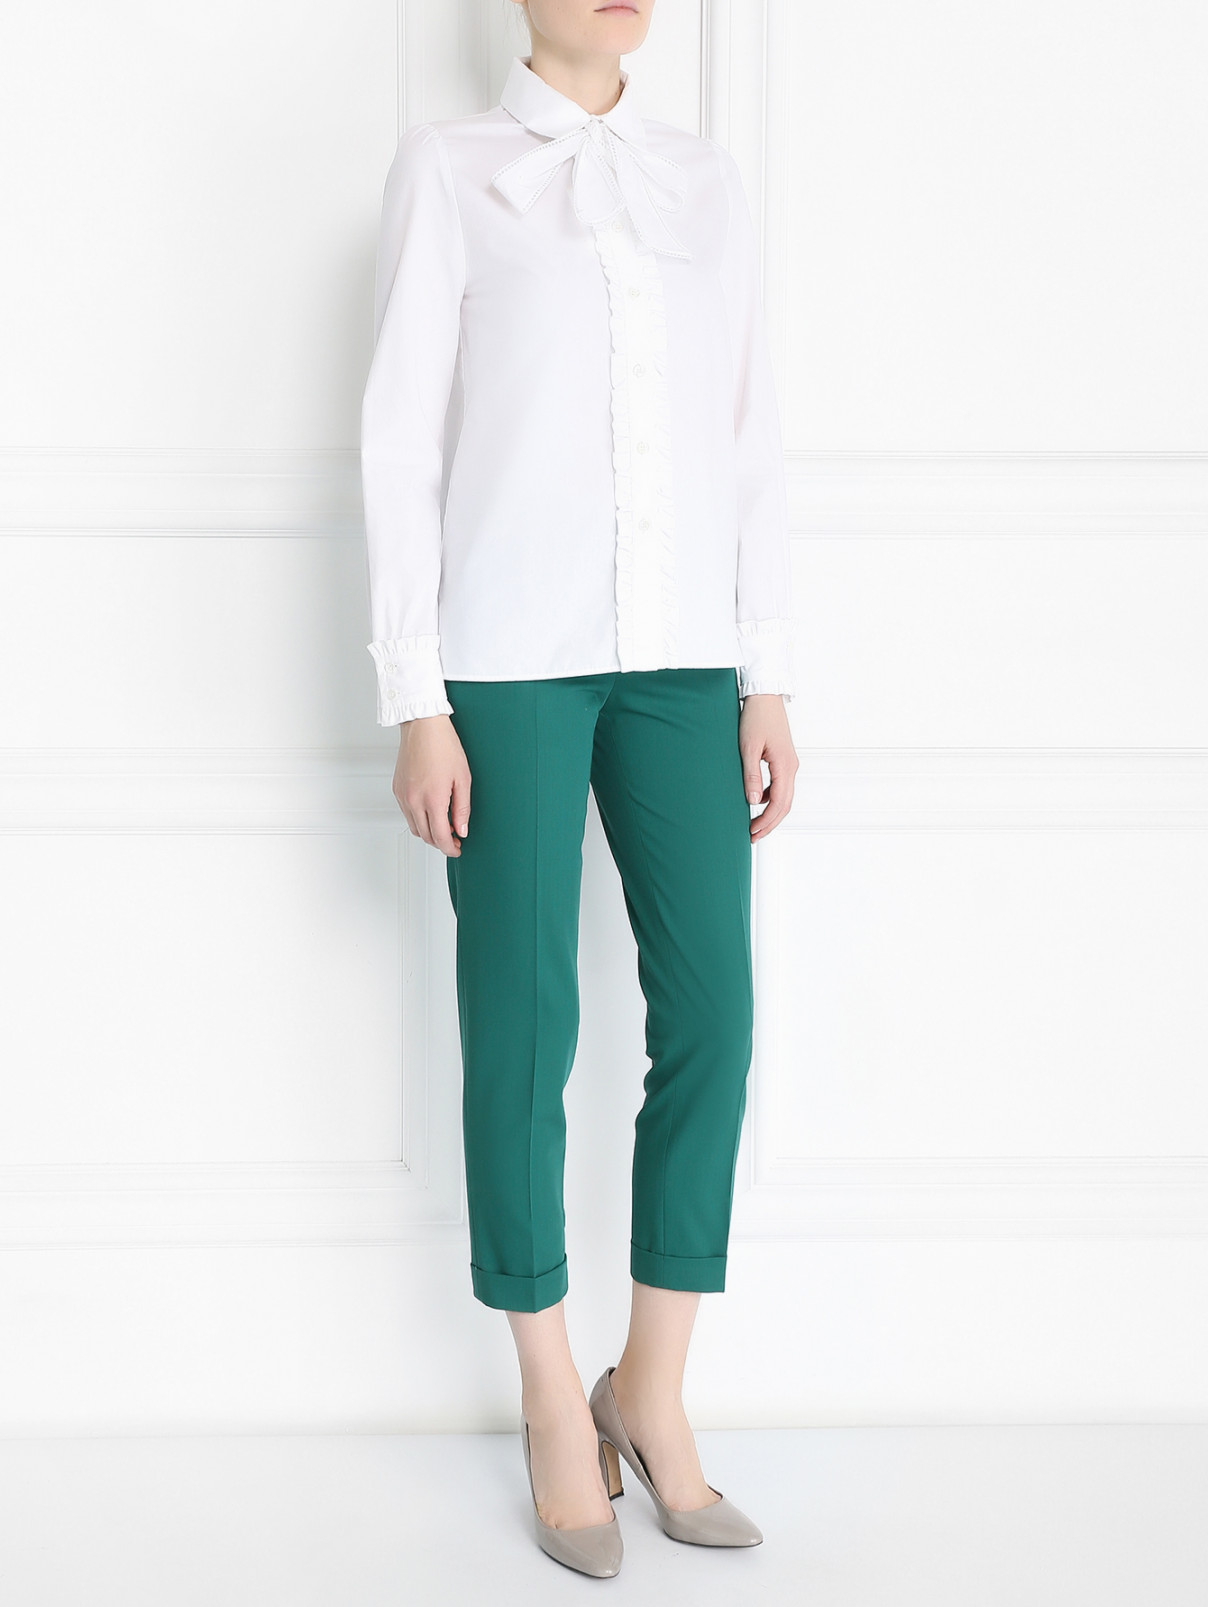 Блуза из хлопка с жабо и бантом Isola Marras  –  Модель Общий вид  – Цвет:  Белый